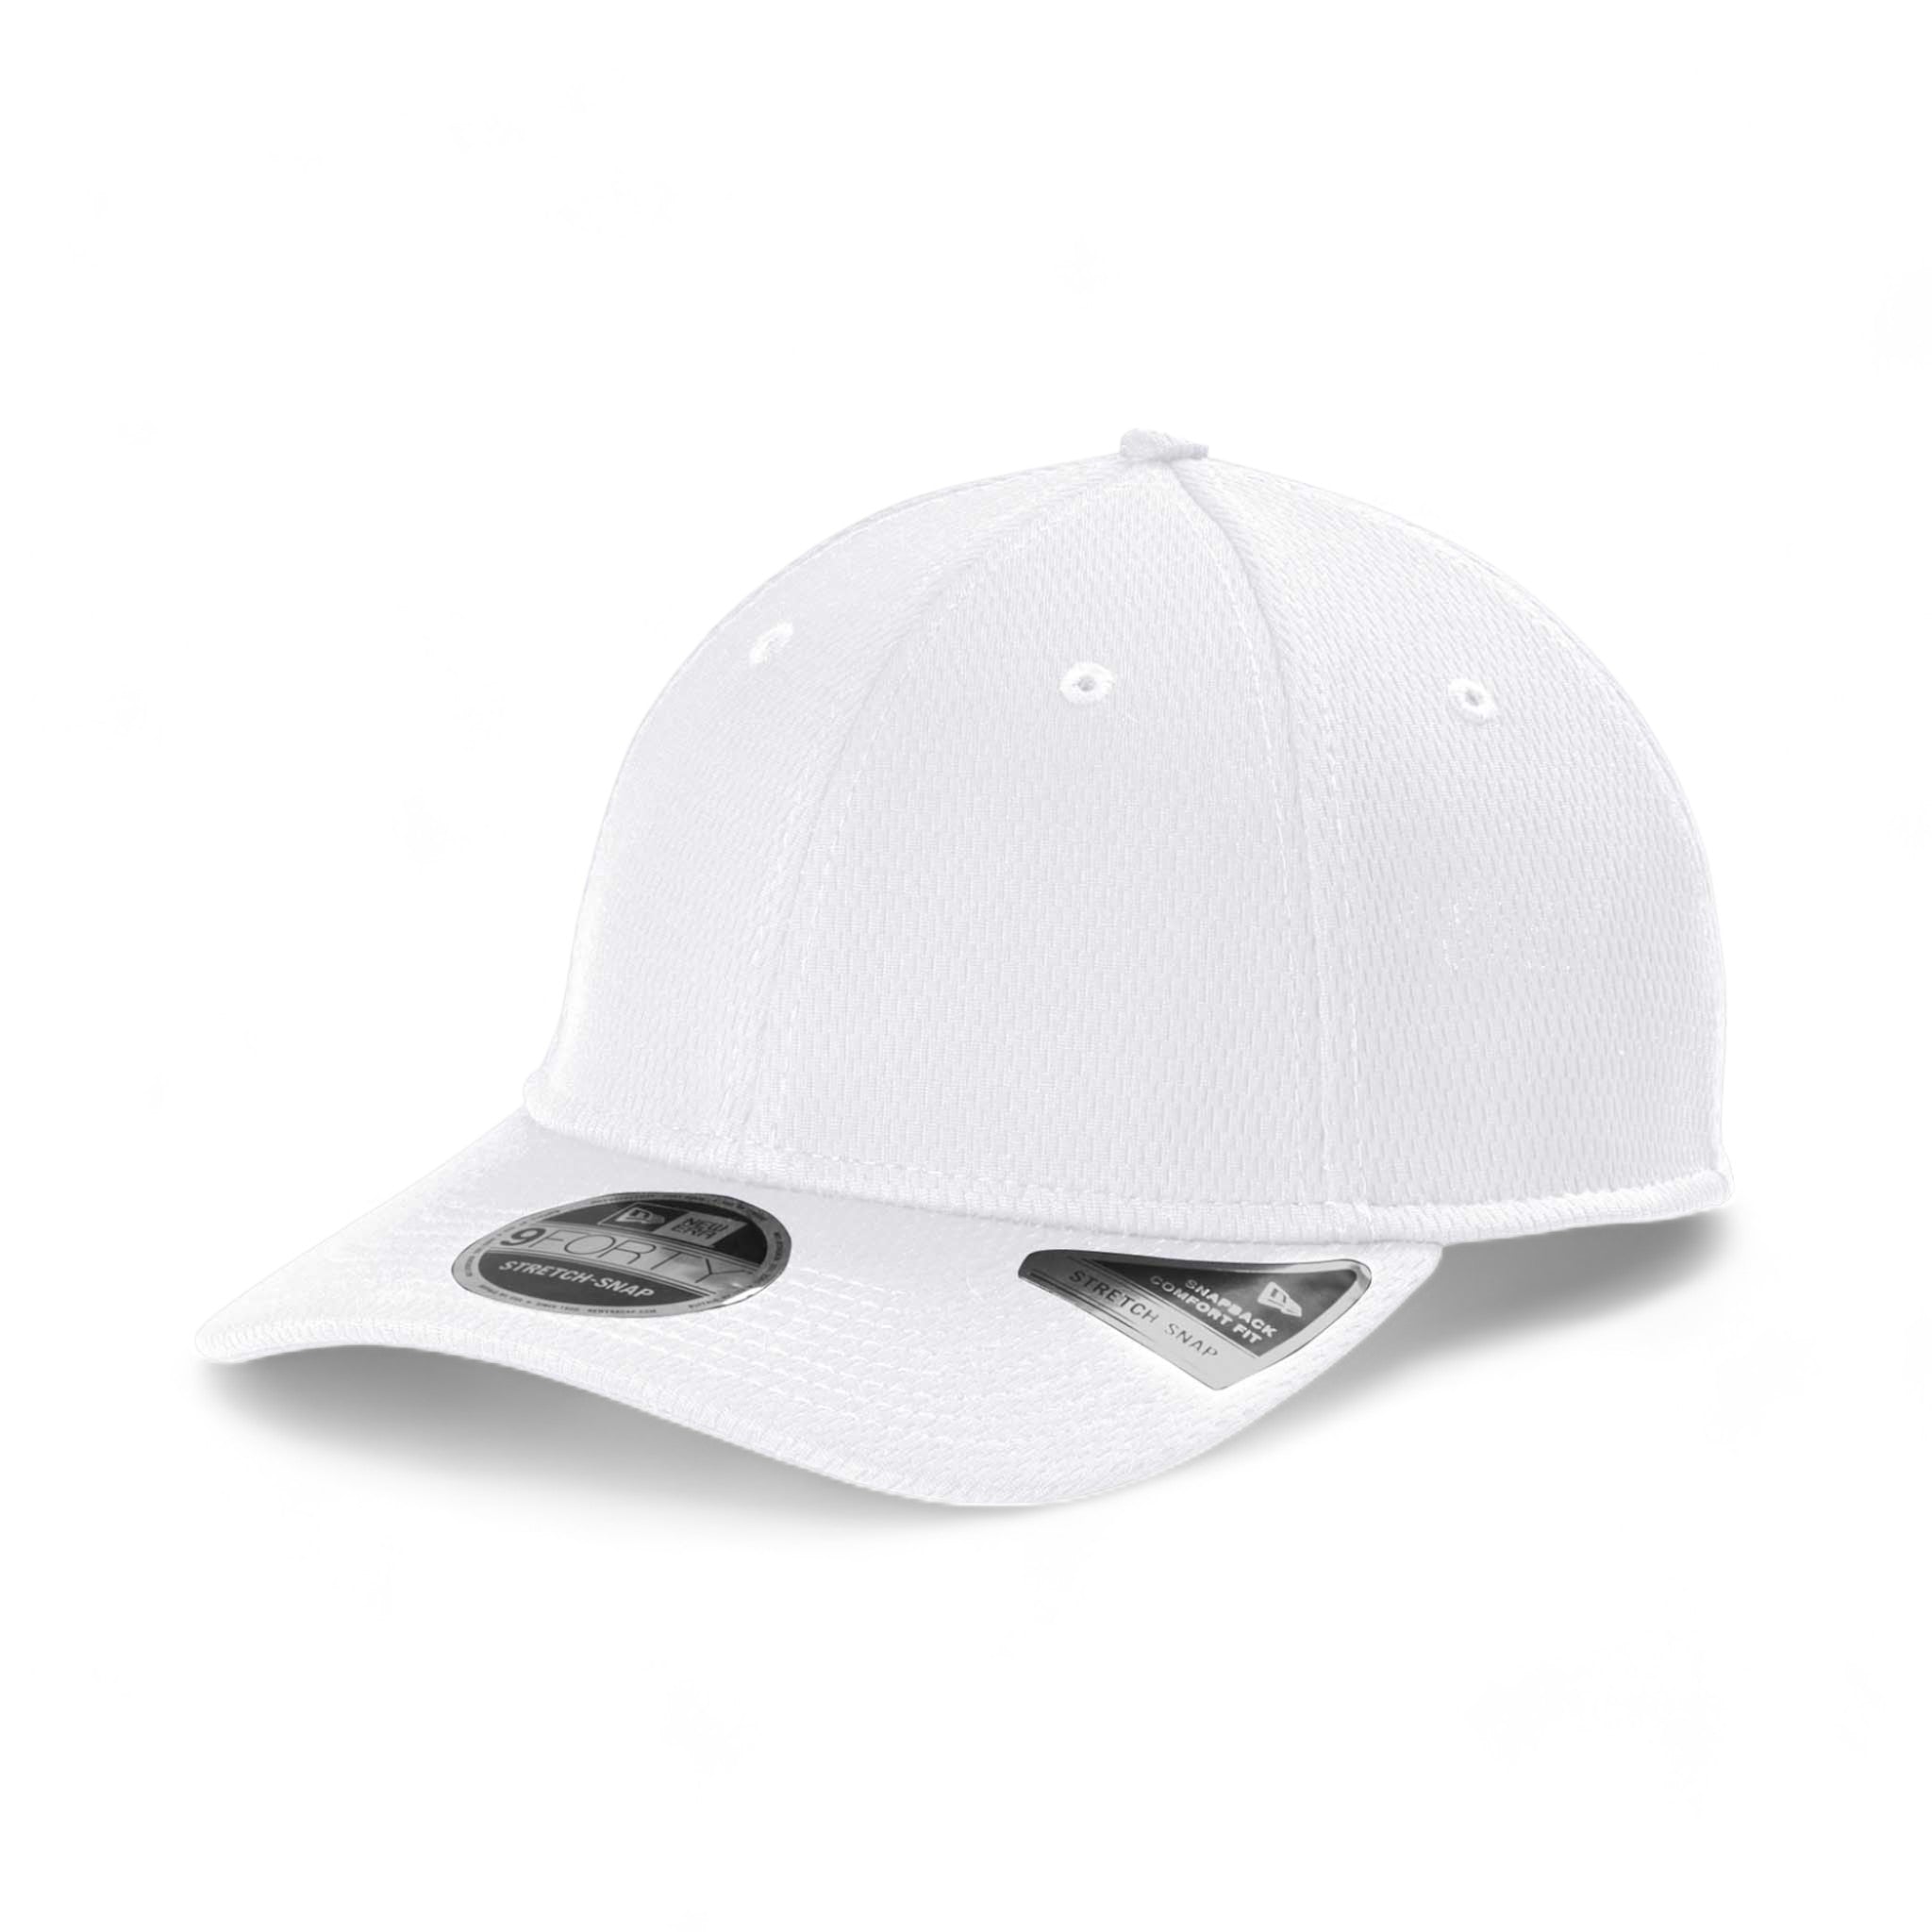 Side view of New Era NE209 custom hat in white